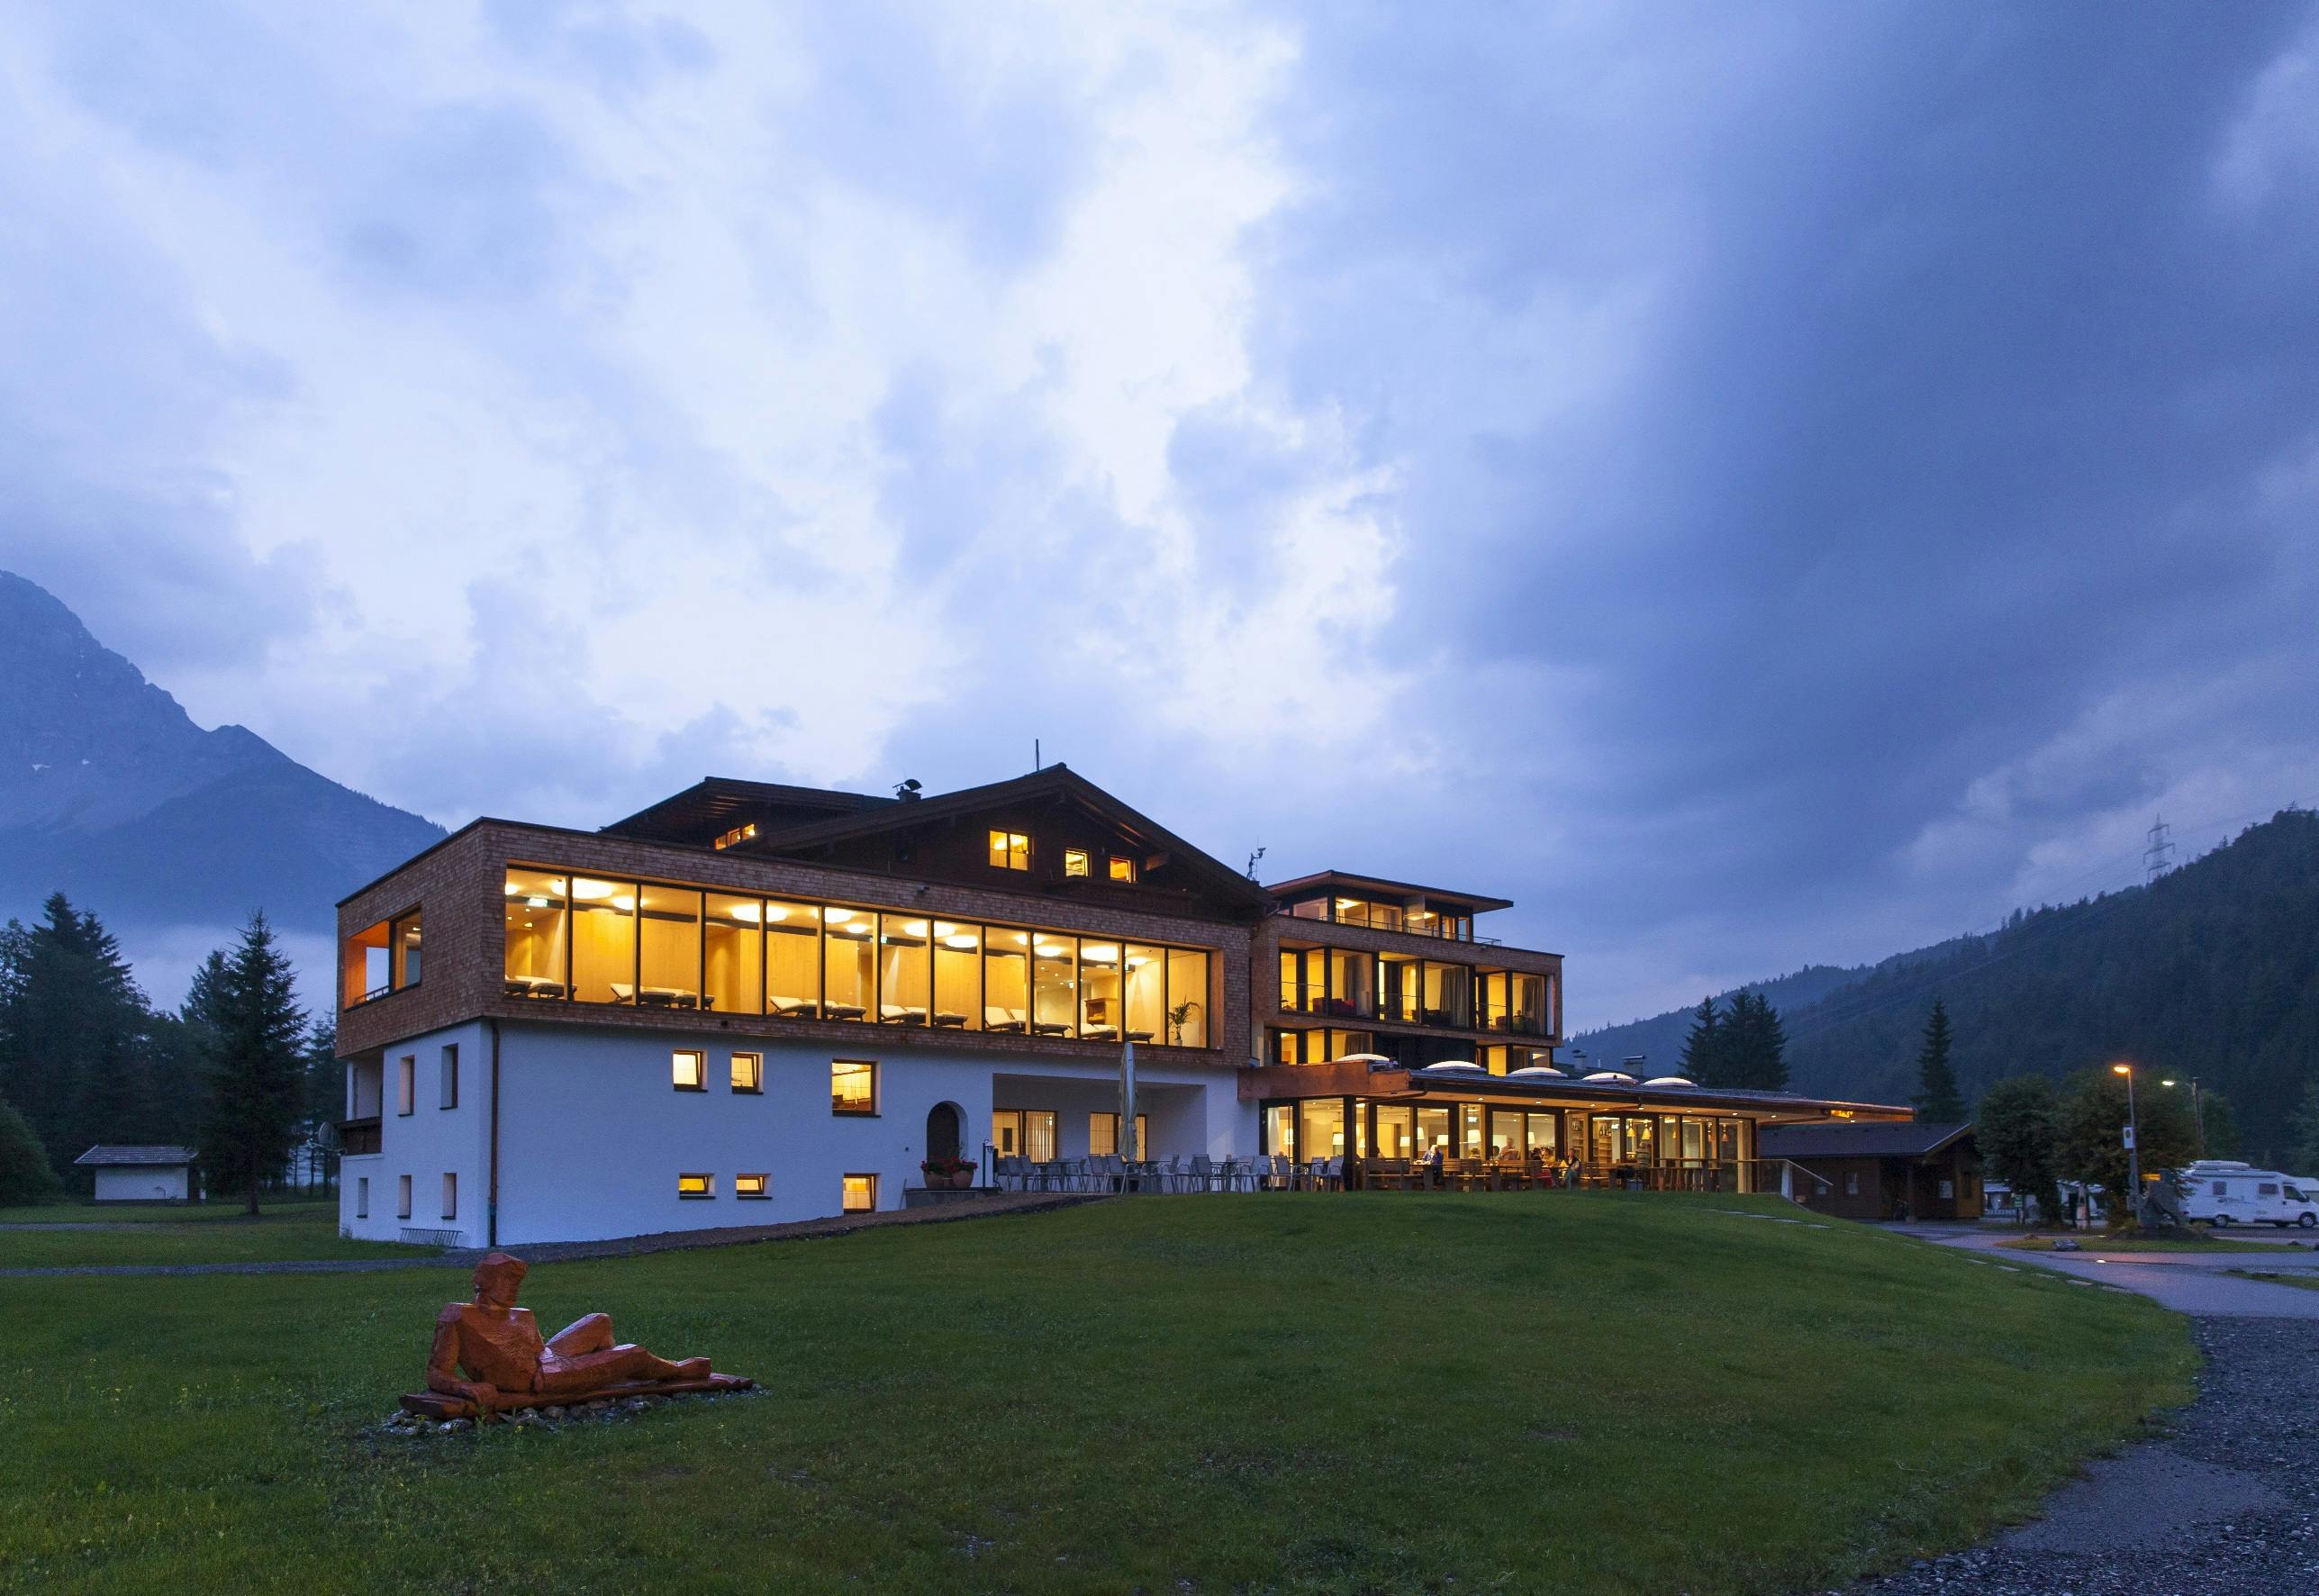 Tradition und Stil in den Tiroler Bergen | 3 Tage